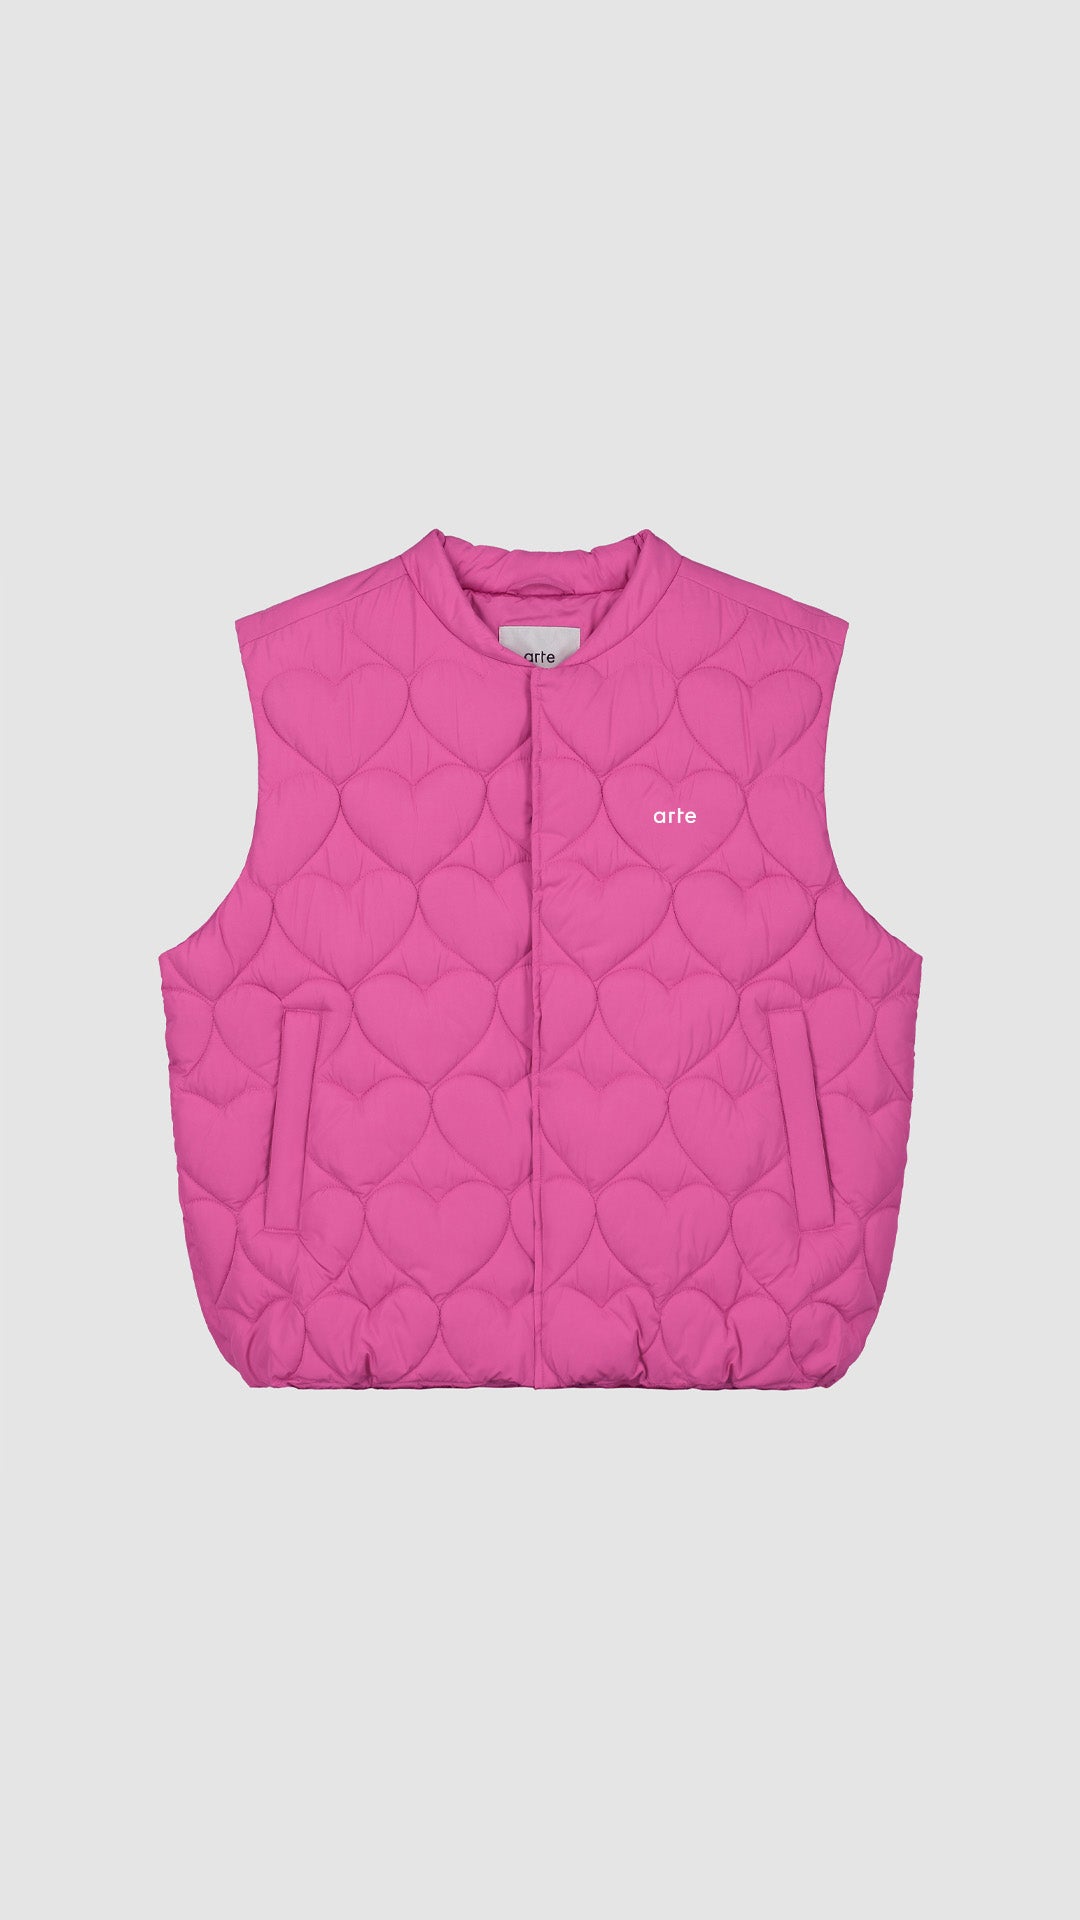 Vince Heart Vest - Pink